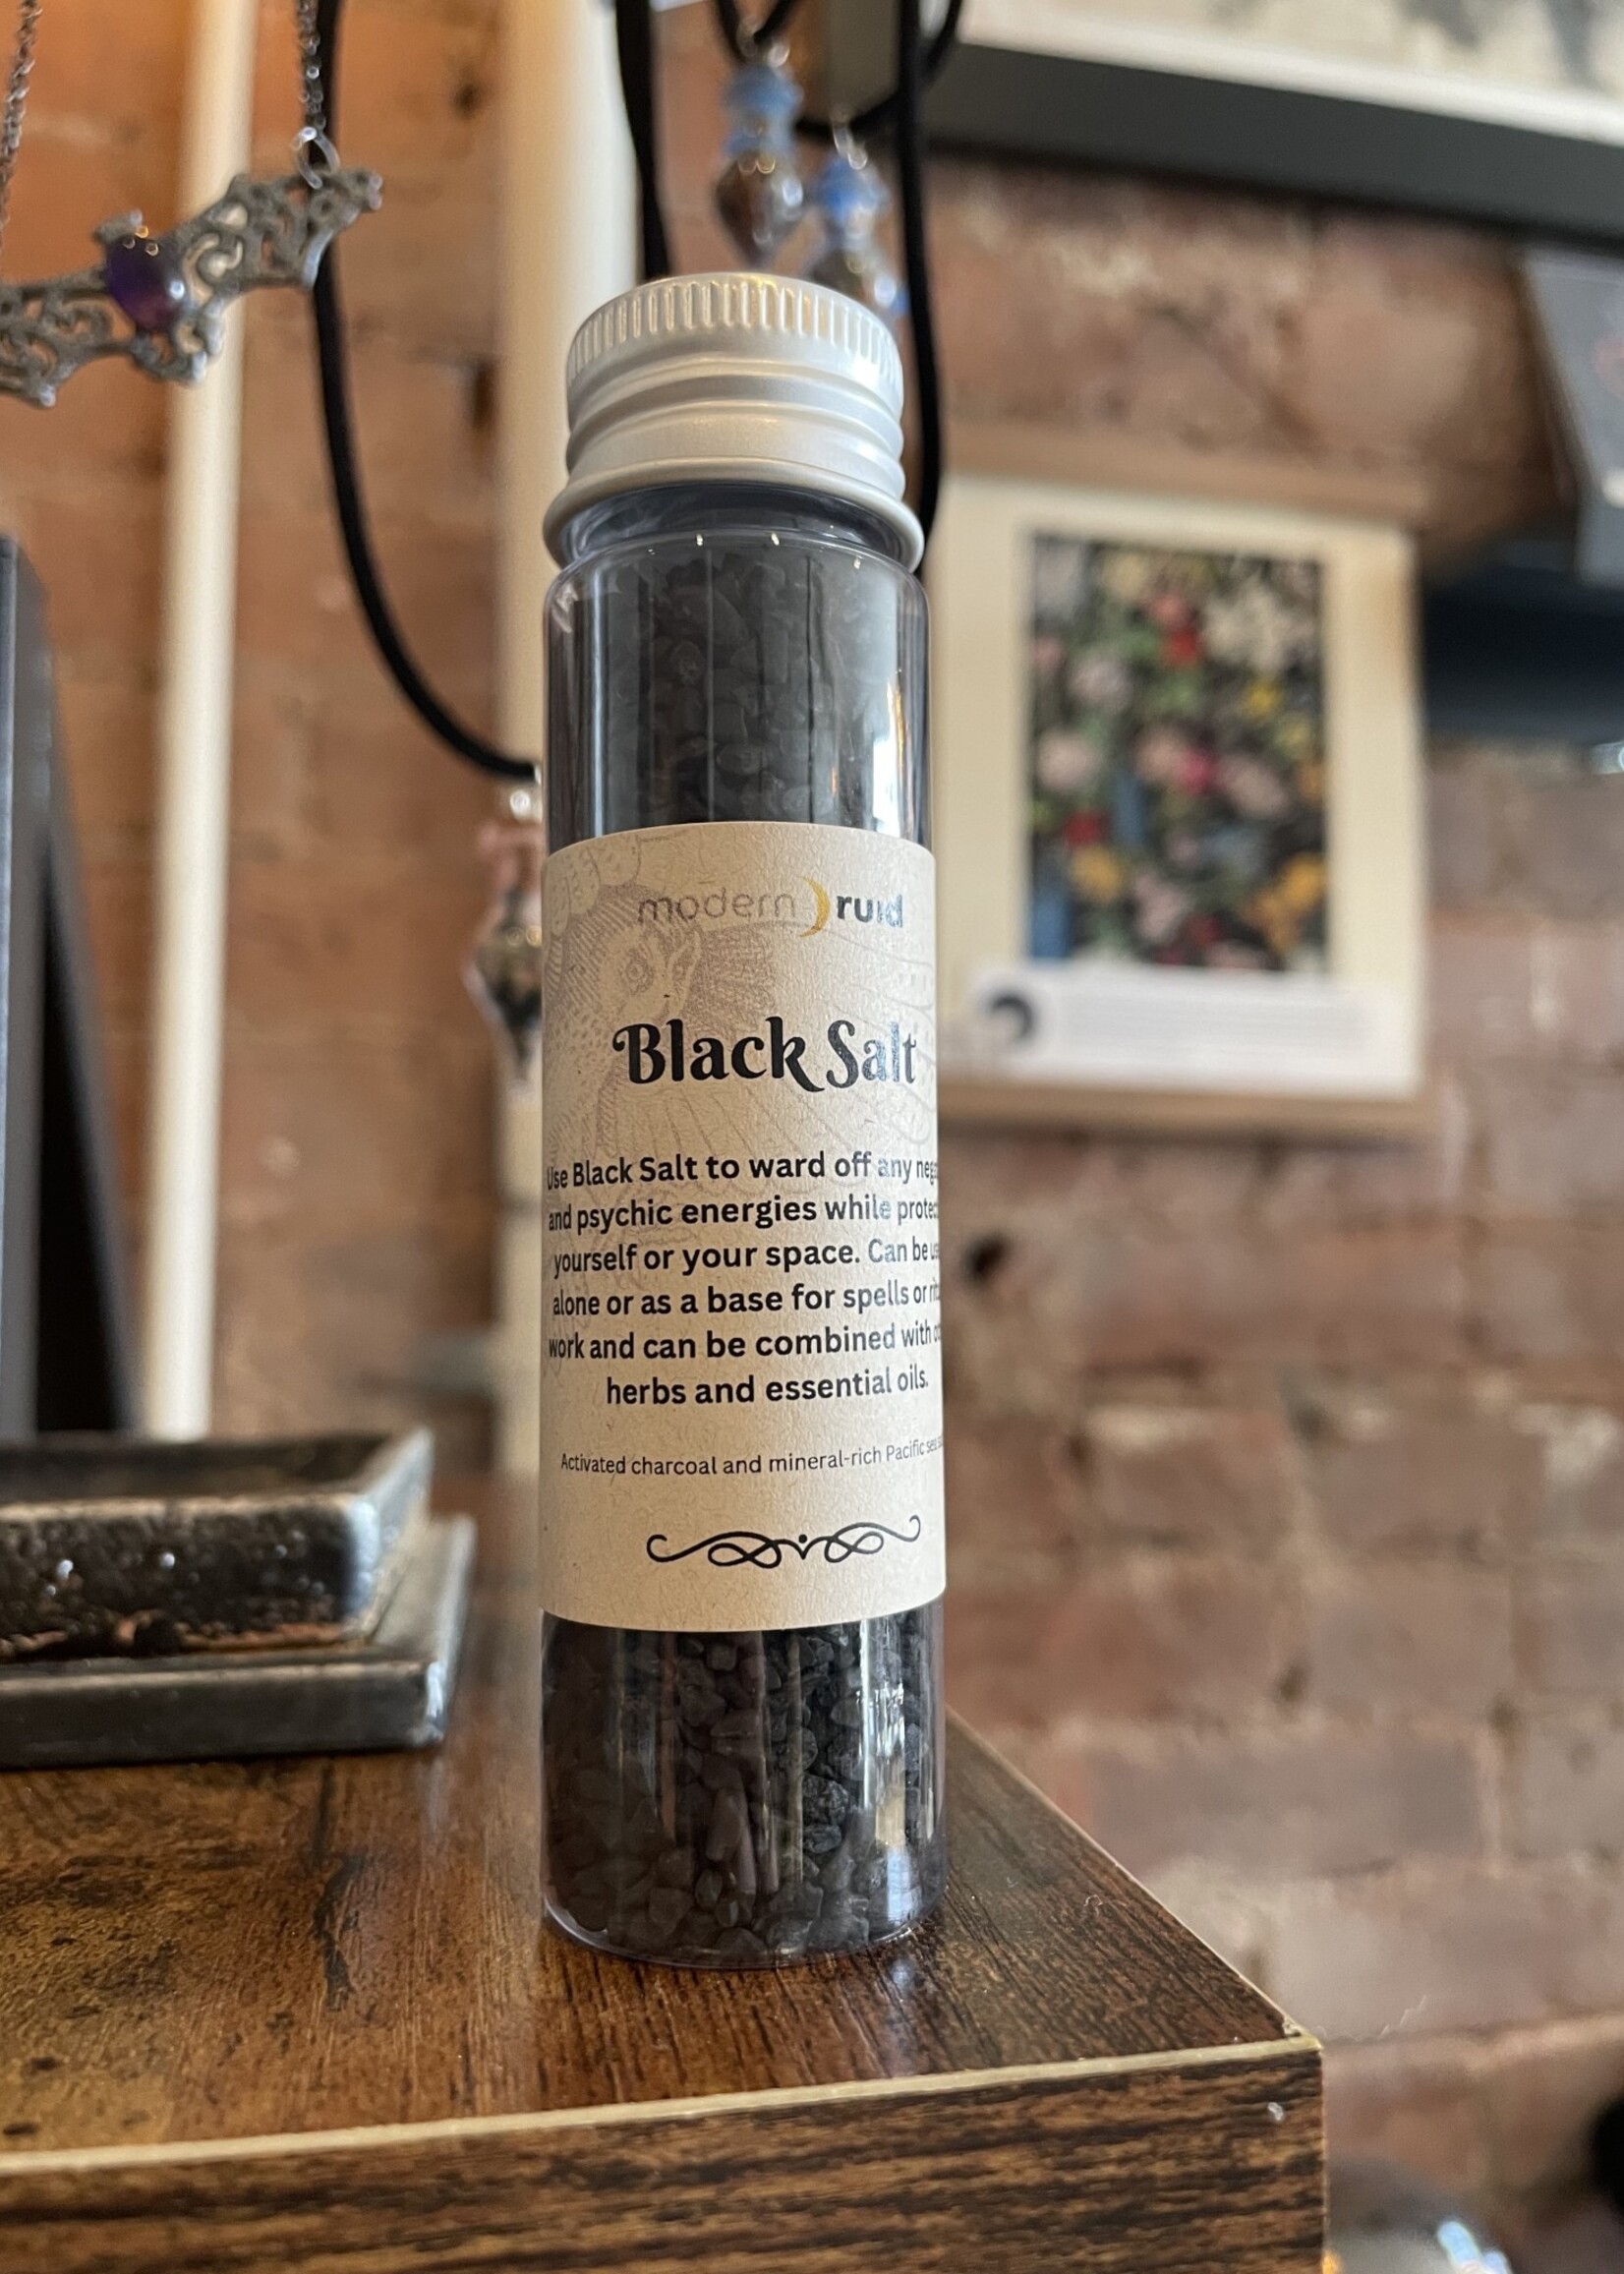 Modern Druid Black Salt